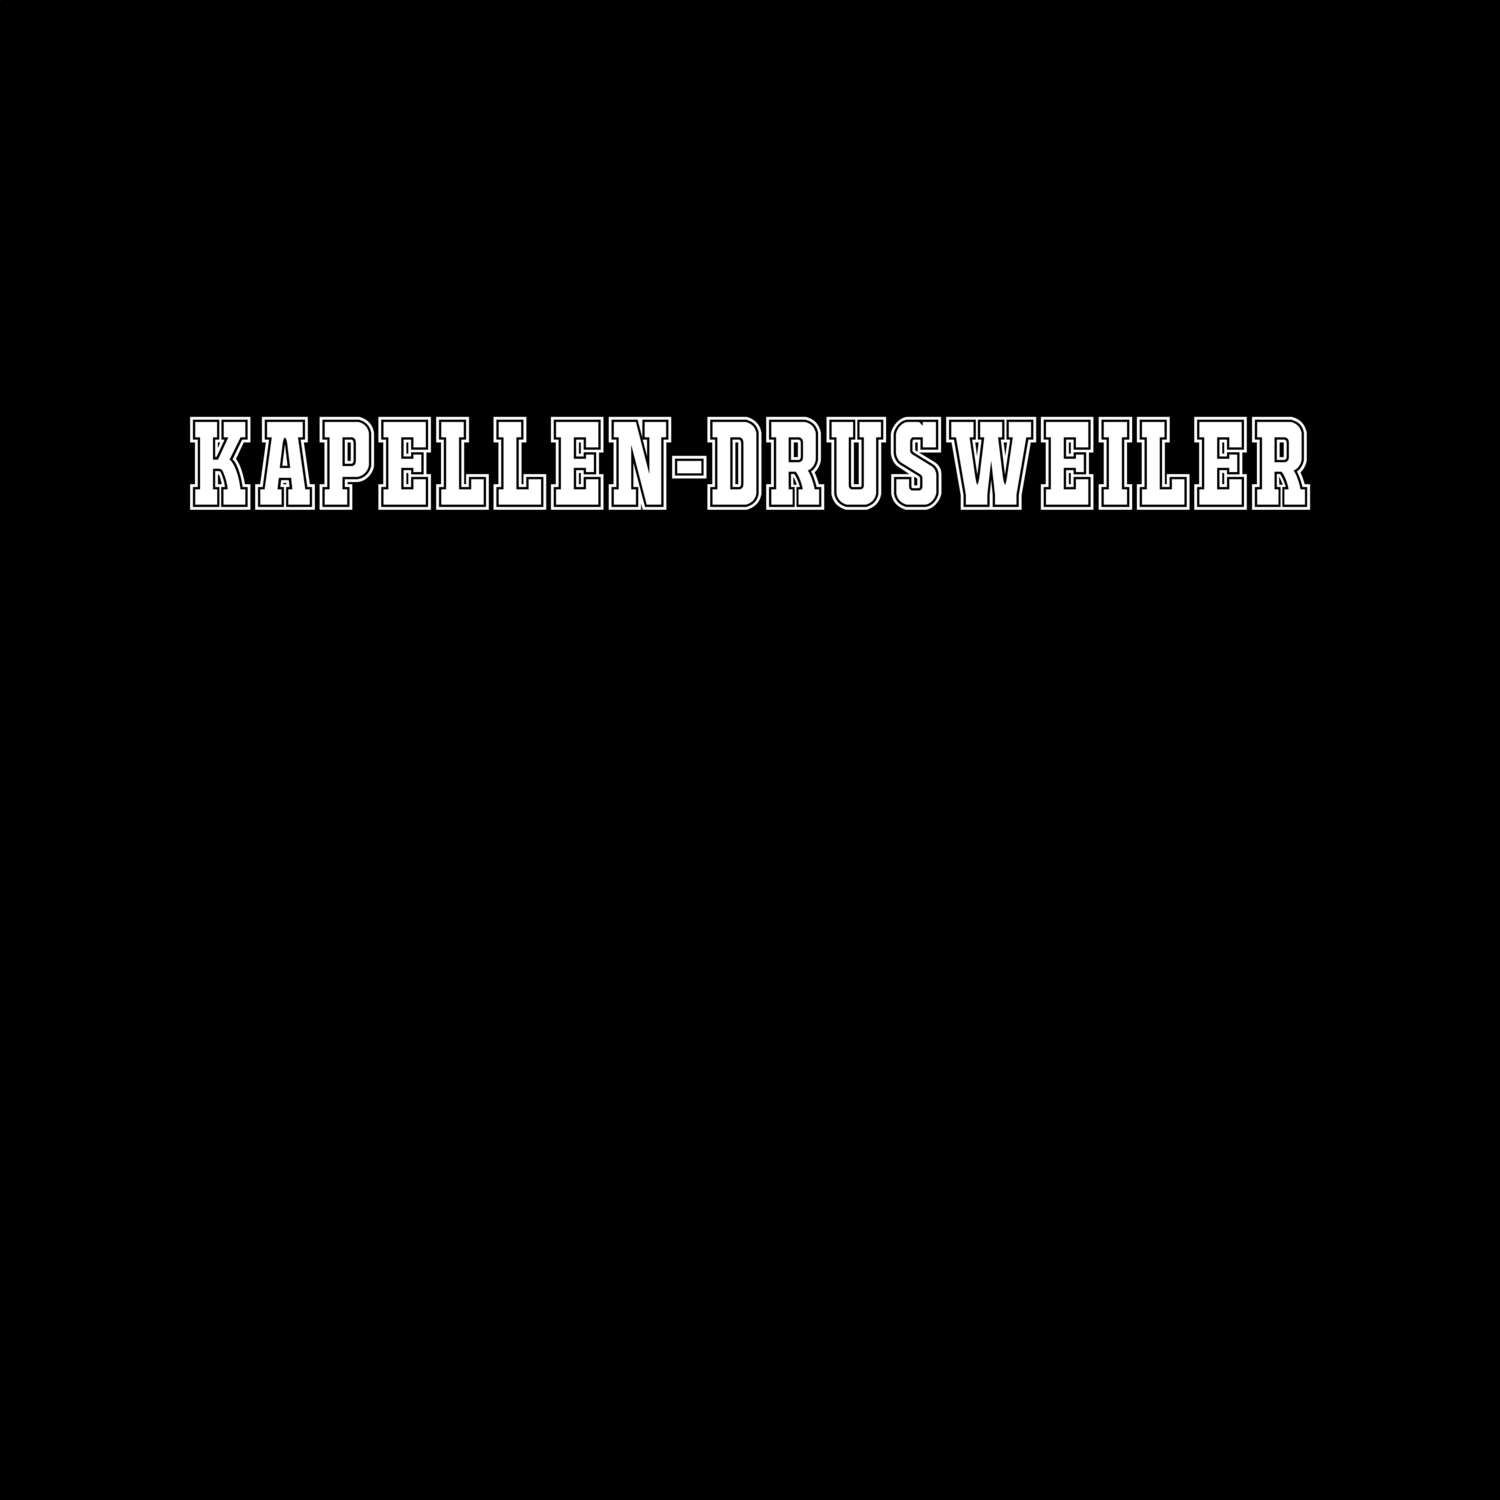 Kapellen-Drusweiler T-Shirt »Classic«